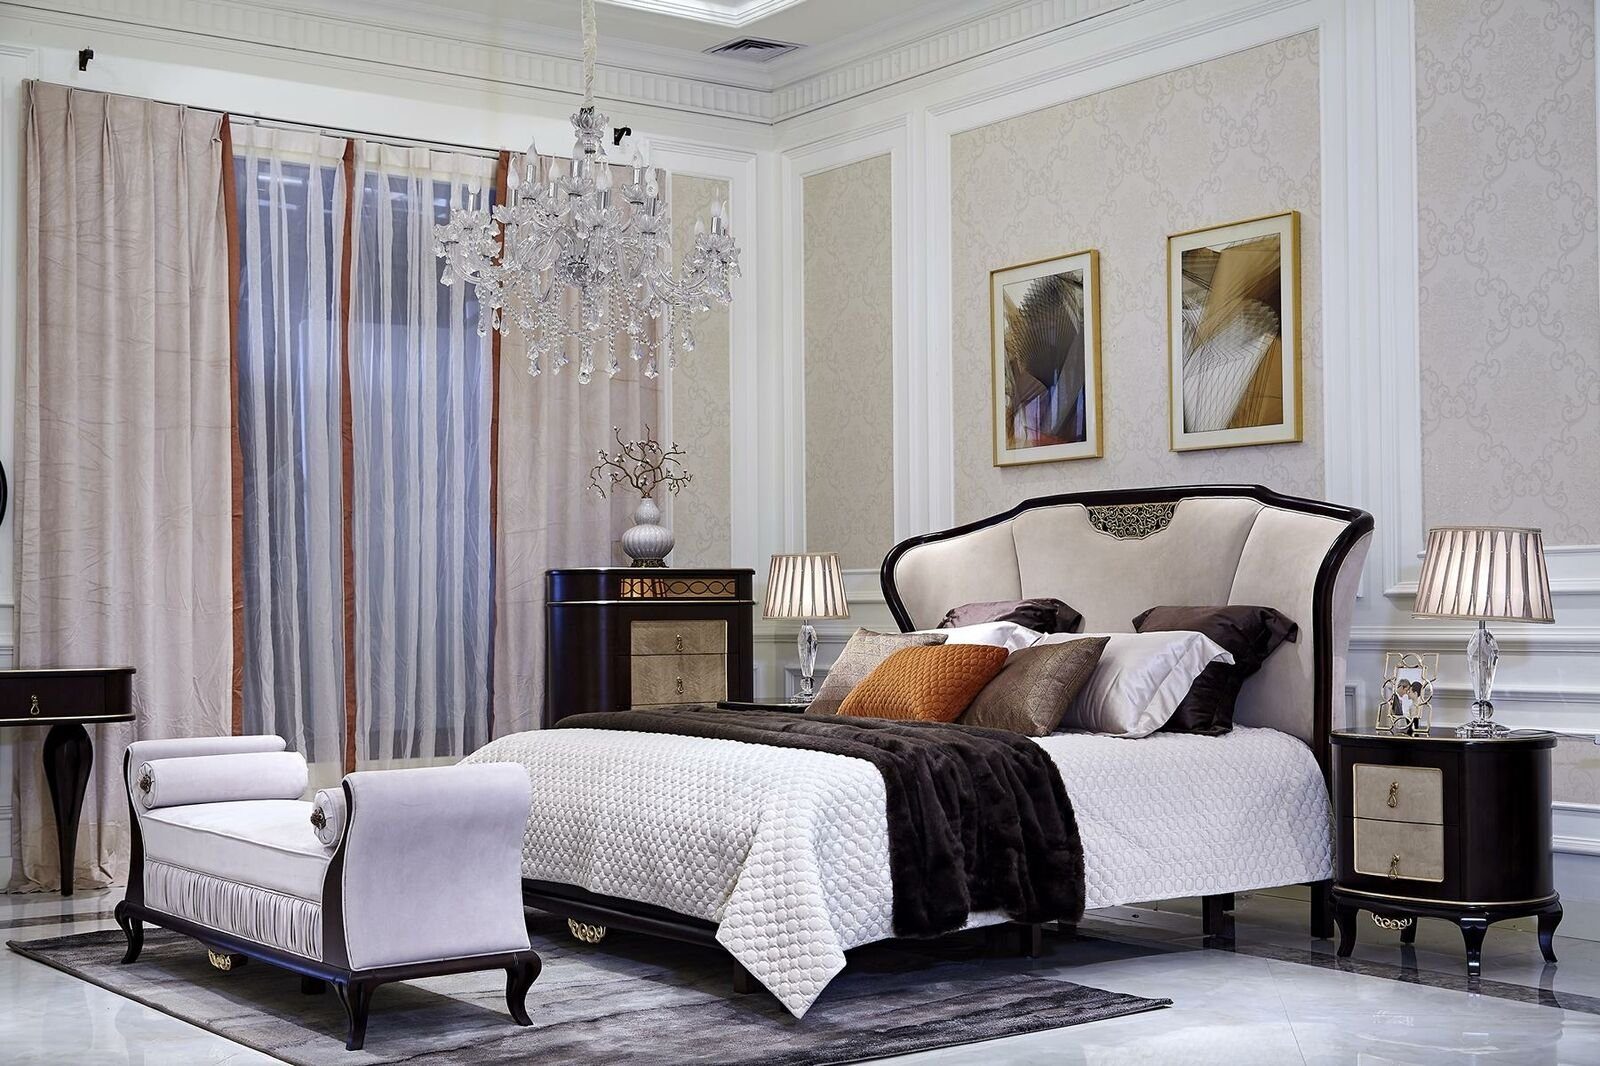 JVmoebel Bett, Design Schlafzimmer Bett Luxus Betten Holz Doppel Ehe Polster | Bettgestelle